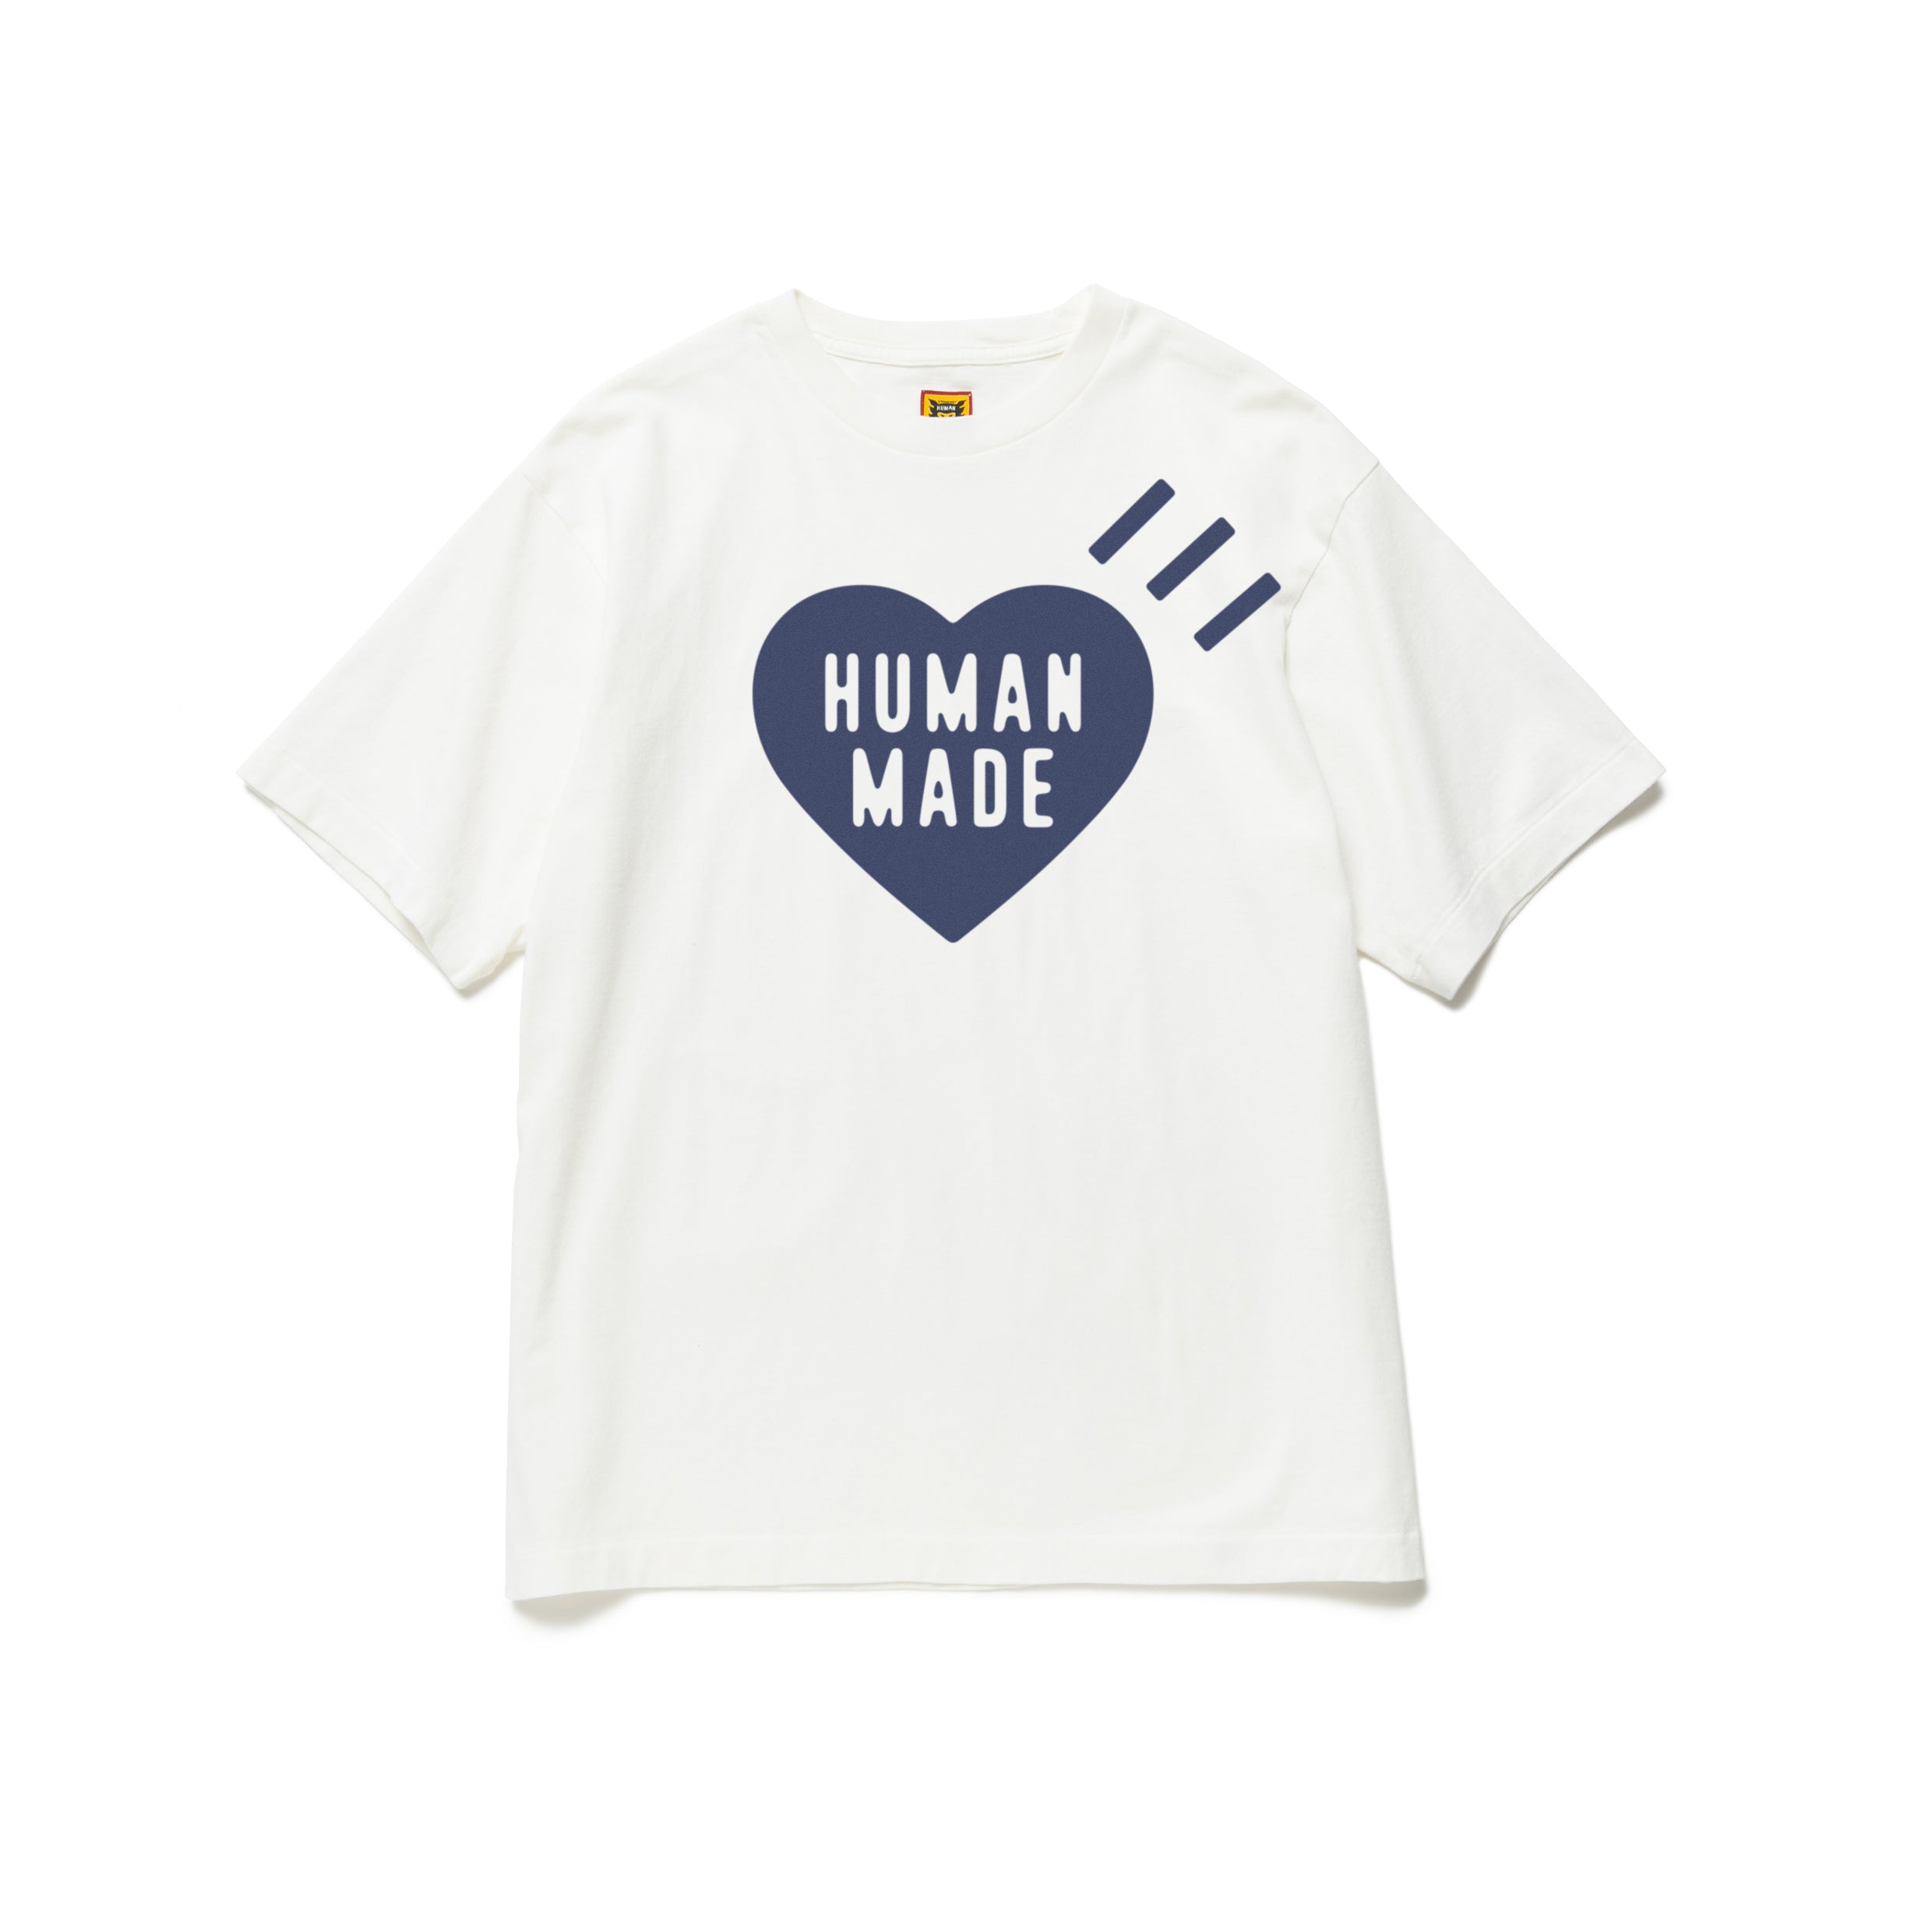 HUMANMADE HEART T-SHIRT 2XL